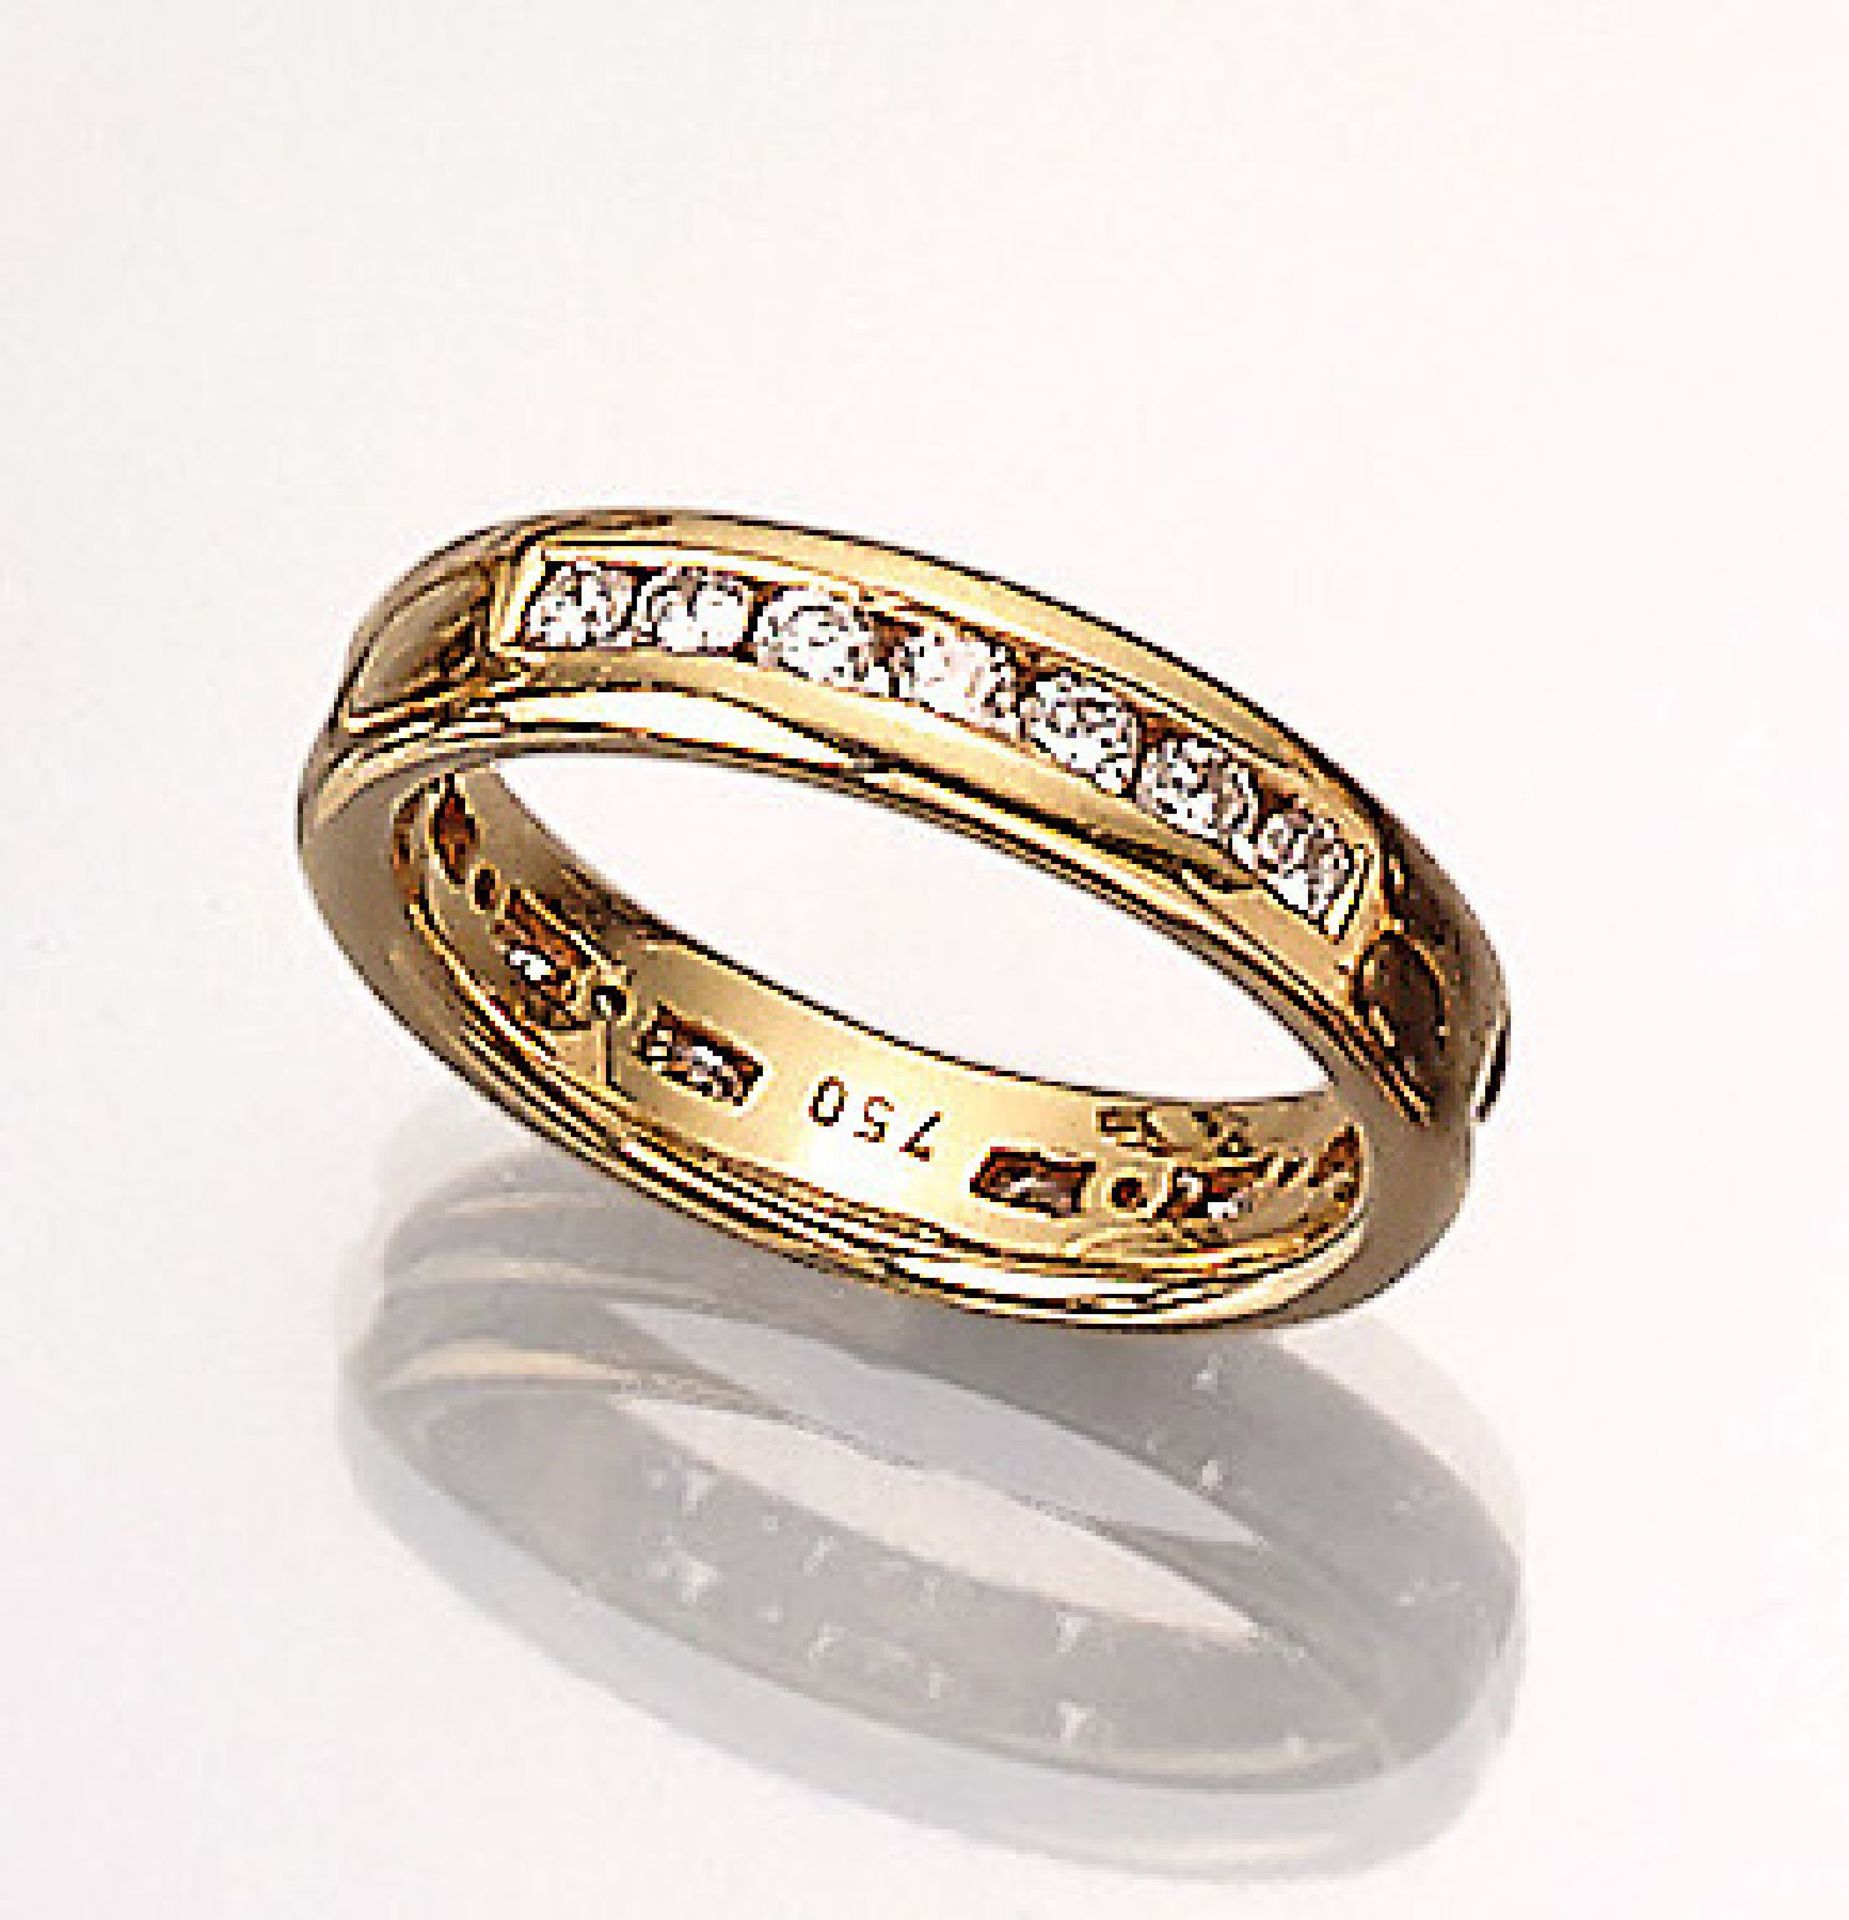 18 kt Gold Ring mit Brillanten, GG 750/000,21 Brillanten zus. ca. 0.84 ct Weiß/vsi, RW 54, ca. 6.1 g